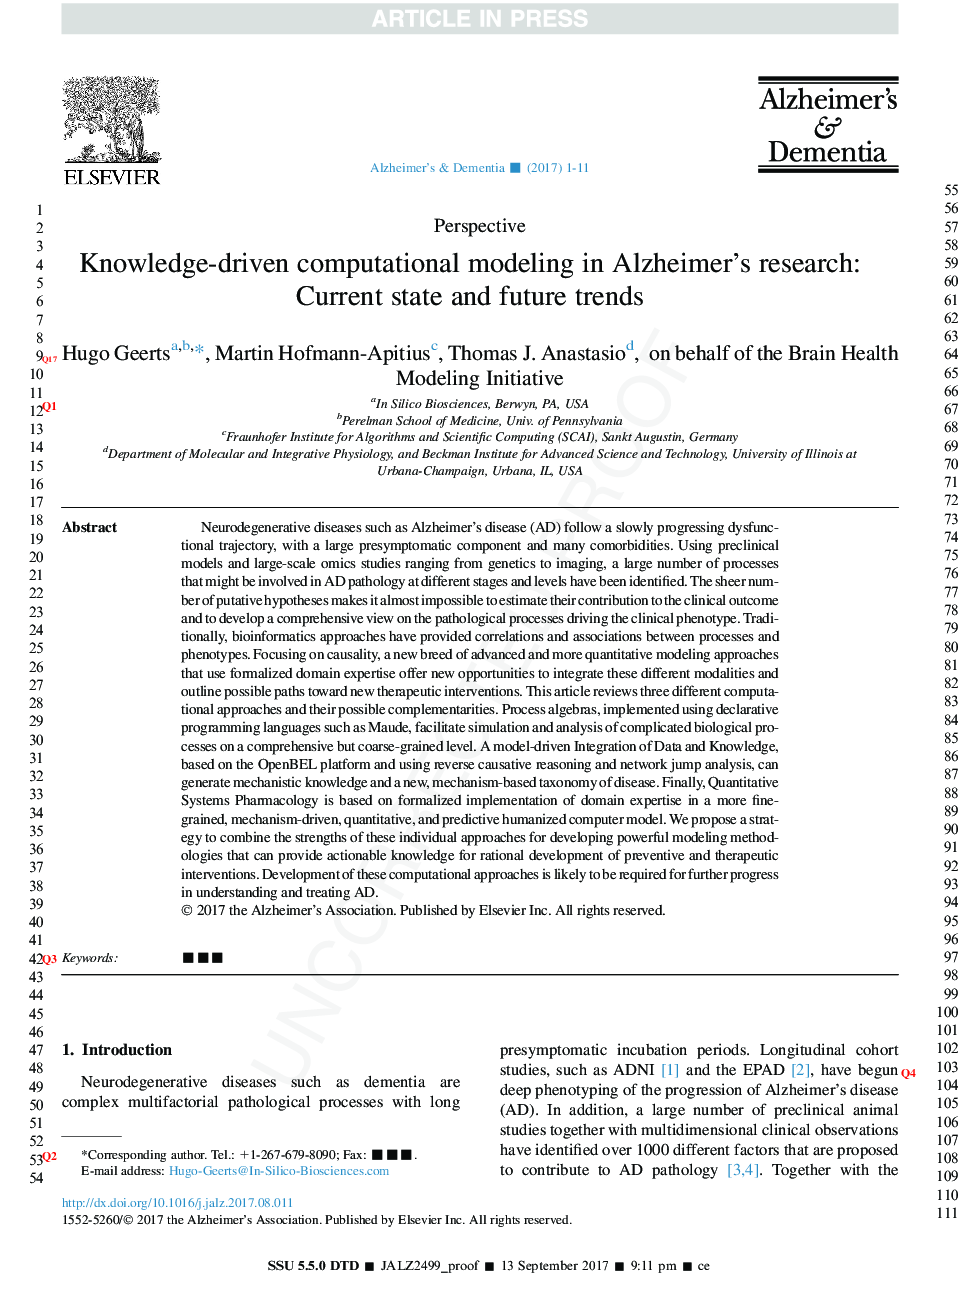 مدل سازی محاسباتی مبتنی بر دانش در پژوهش بیماری آلزایمر: وضعیت فعلی و روند آینده 